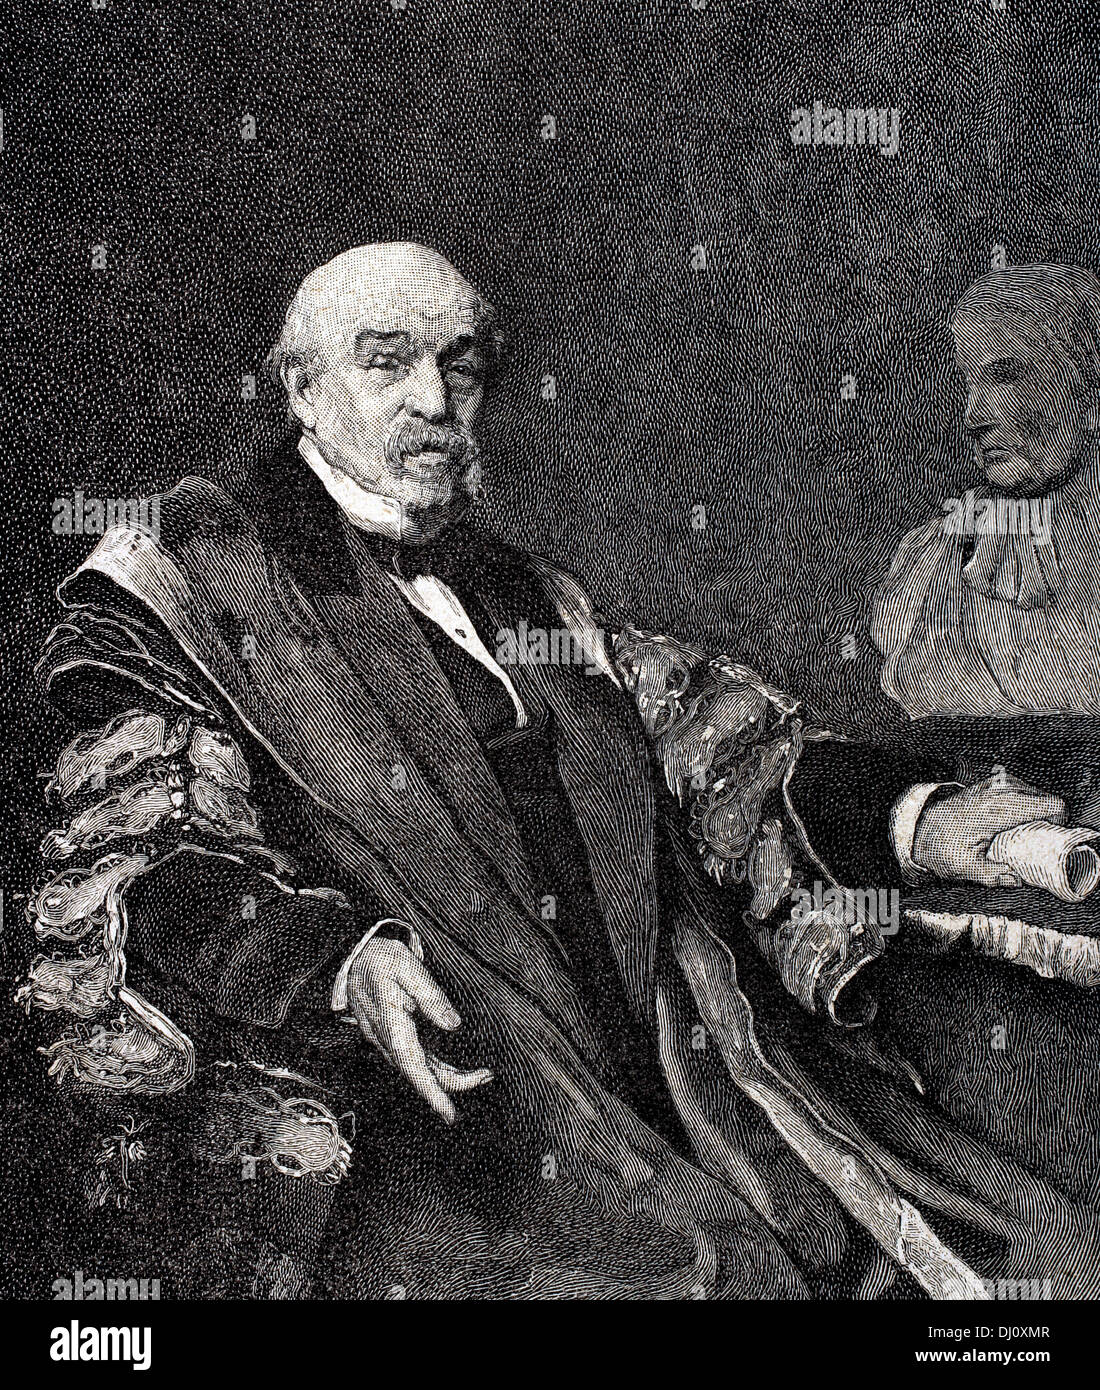 Sir William Jenner, primer Baronet (1815-1898). Médico inglés. Descubrió la distinción entre el tifus y la fiebre tifoidea. Foto de stock